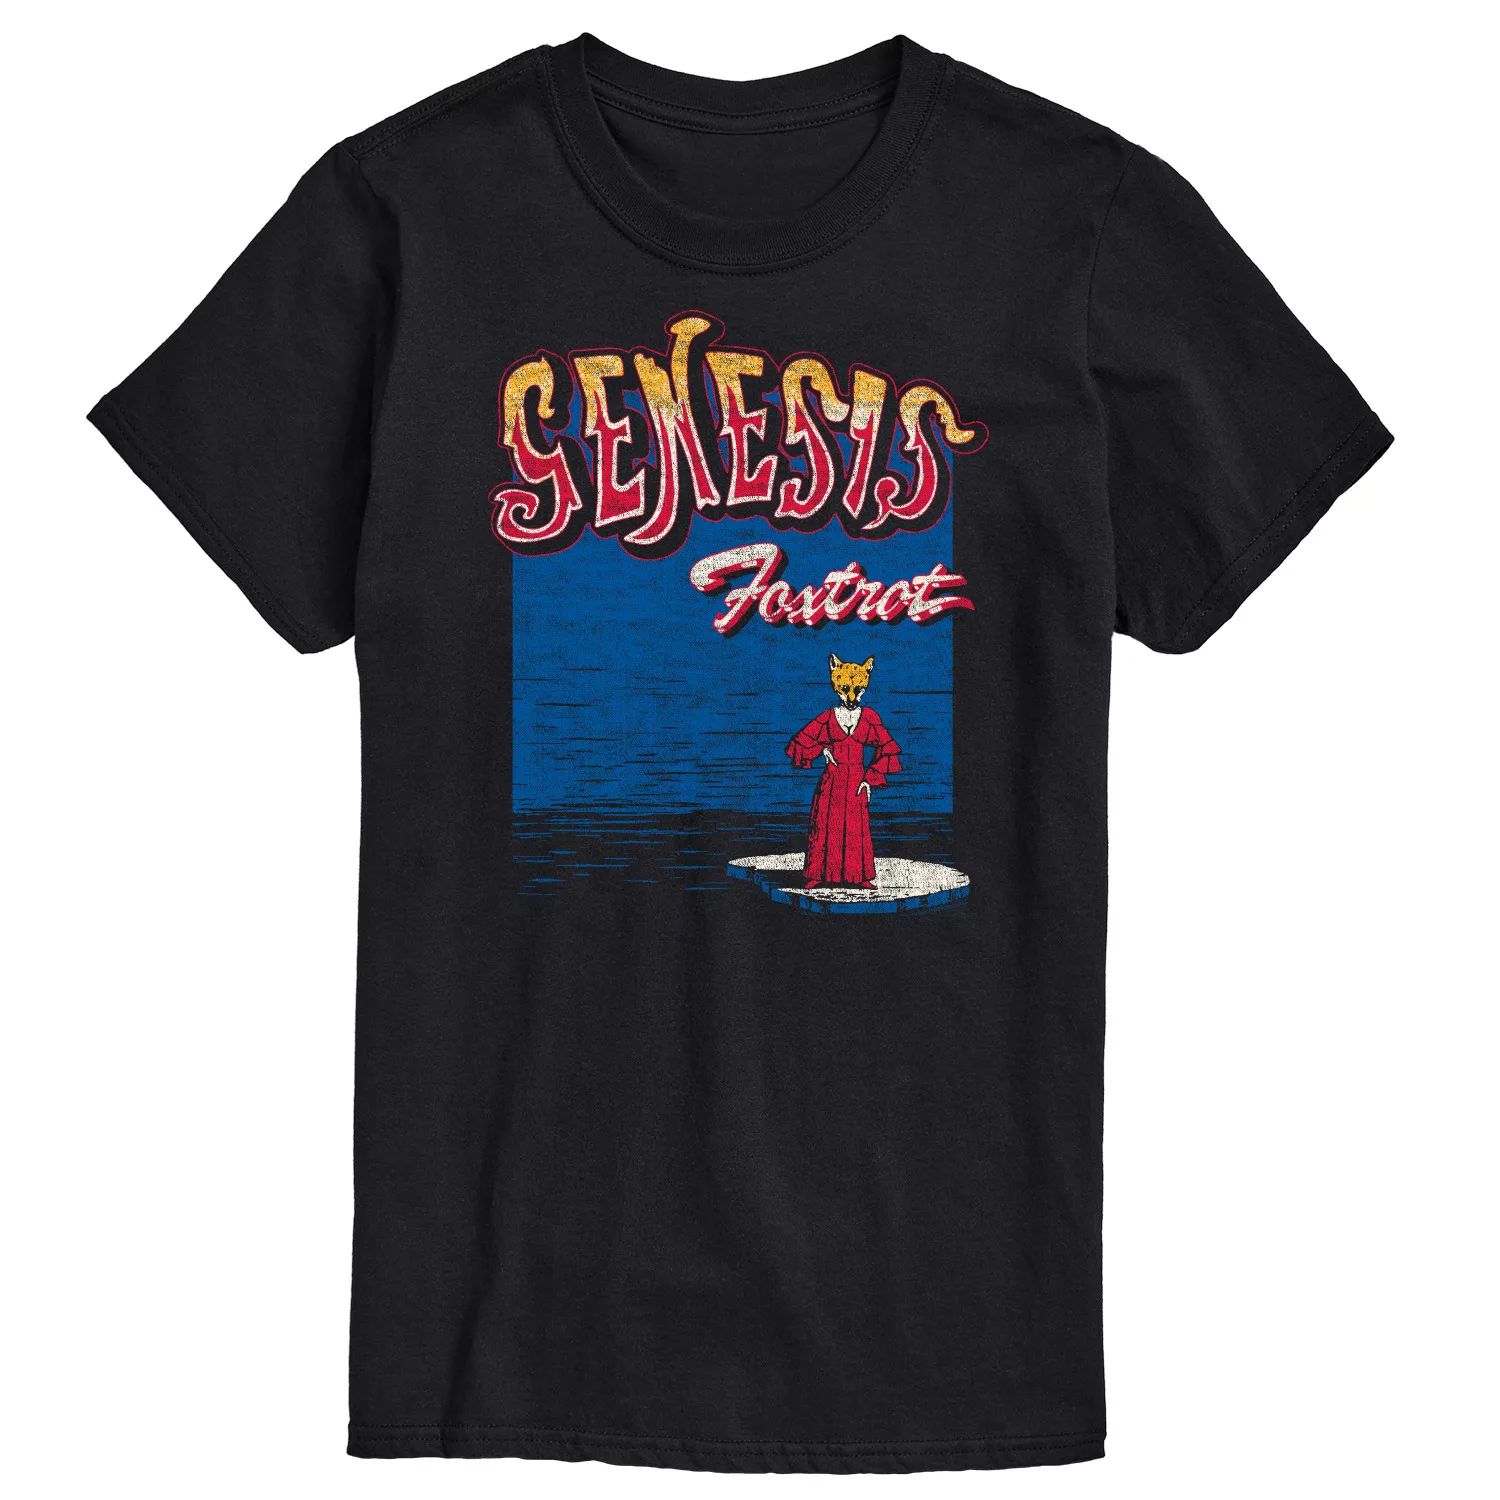 Мужская футболка Genesis Foxtrot Vintage с графическим рисунком Licensed Character genesis foxtrot lp конверты внутренние coex для грампластинок 12 25шт набор